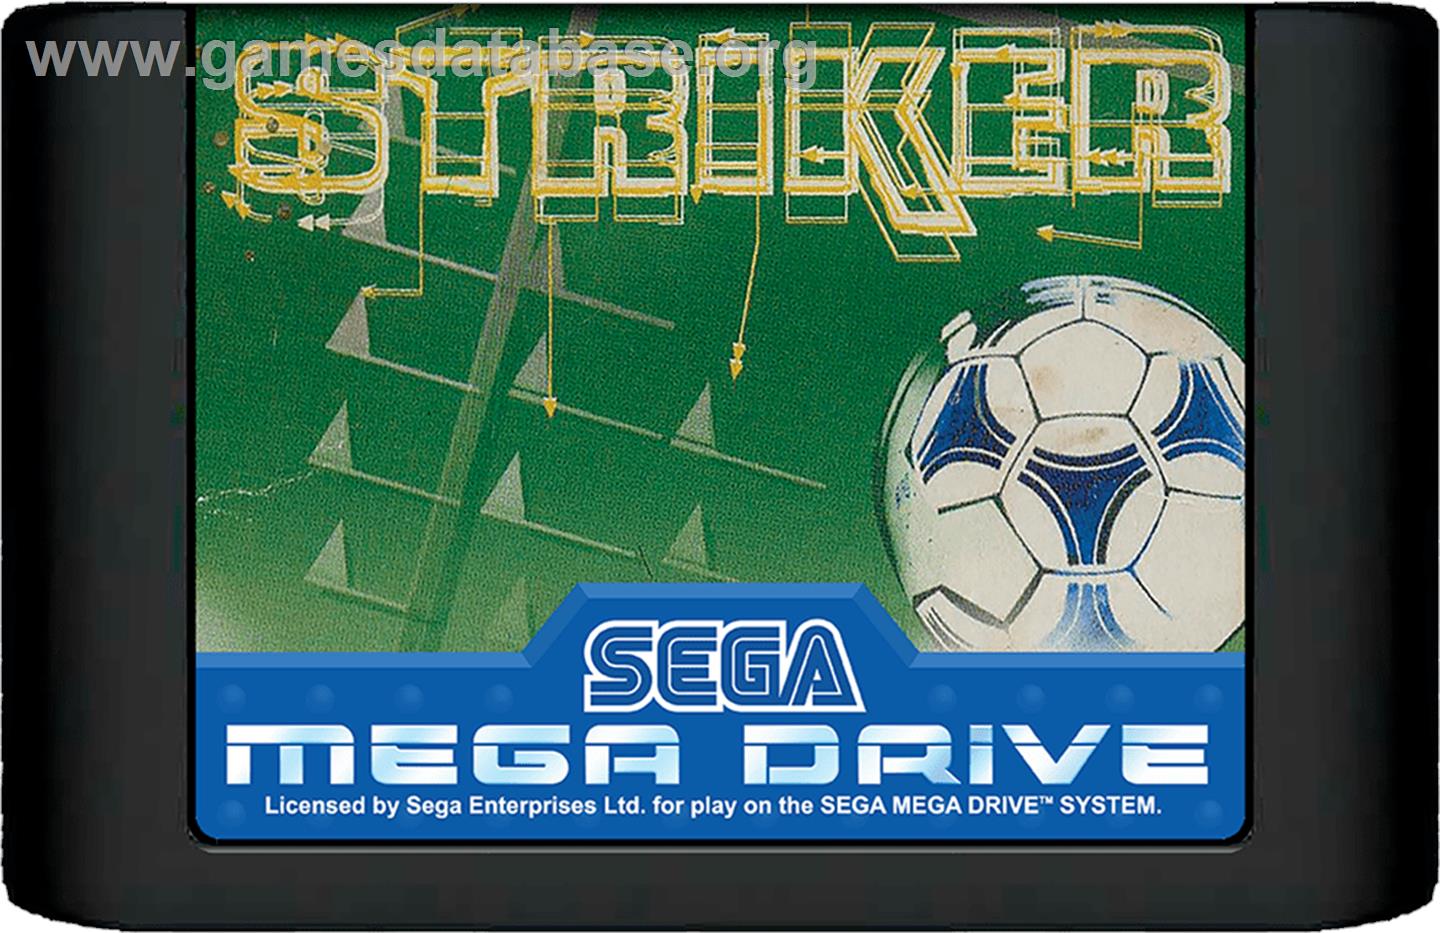 Striker - Sega Genesis - Artwork - Cartridge